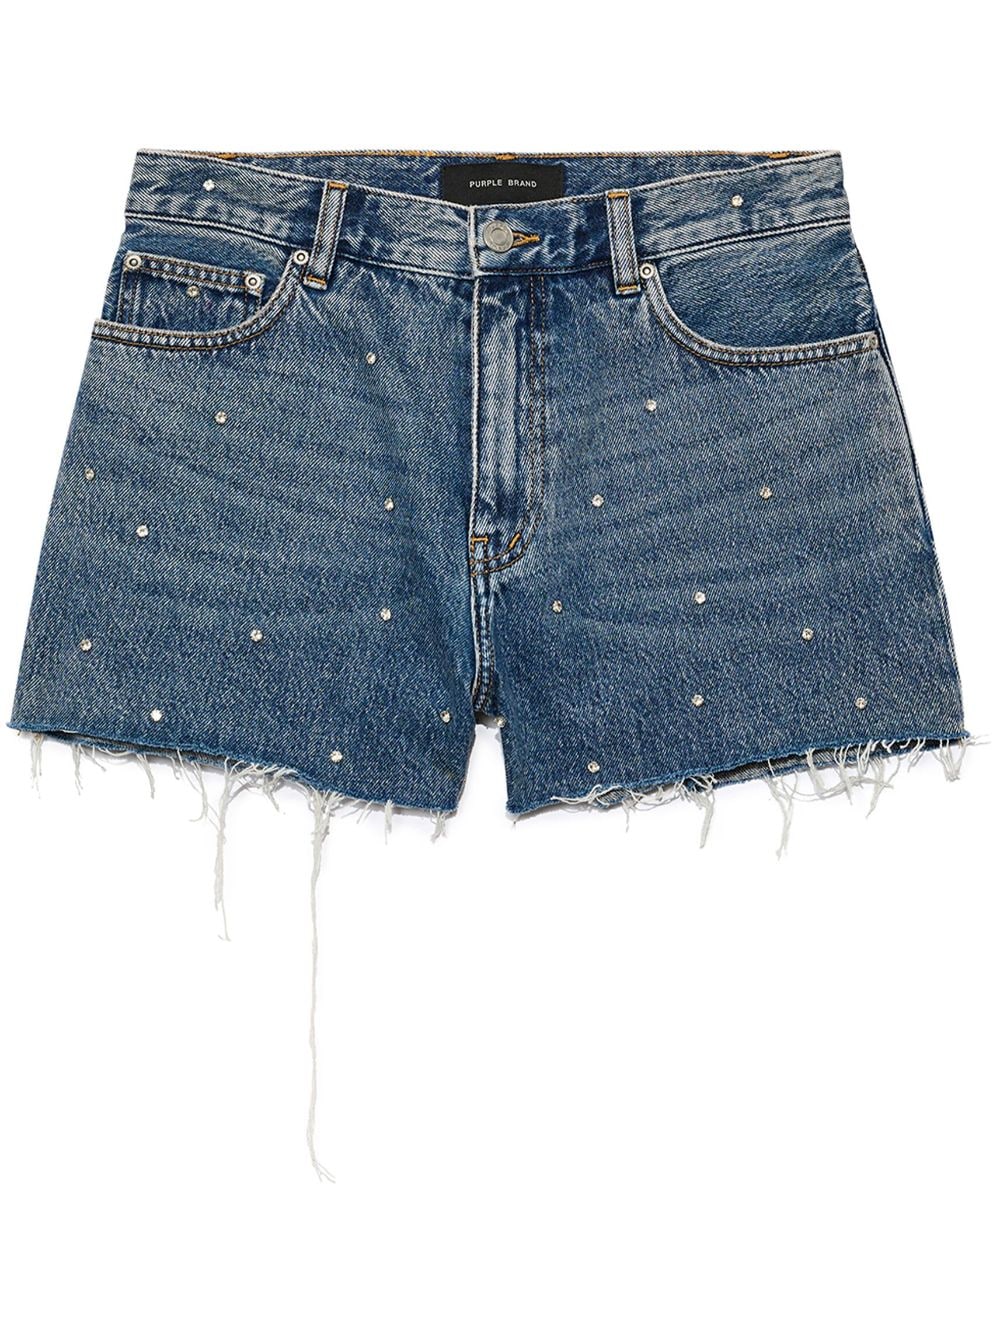 rhinestone-embellished denim shorts